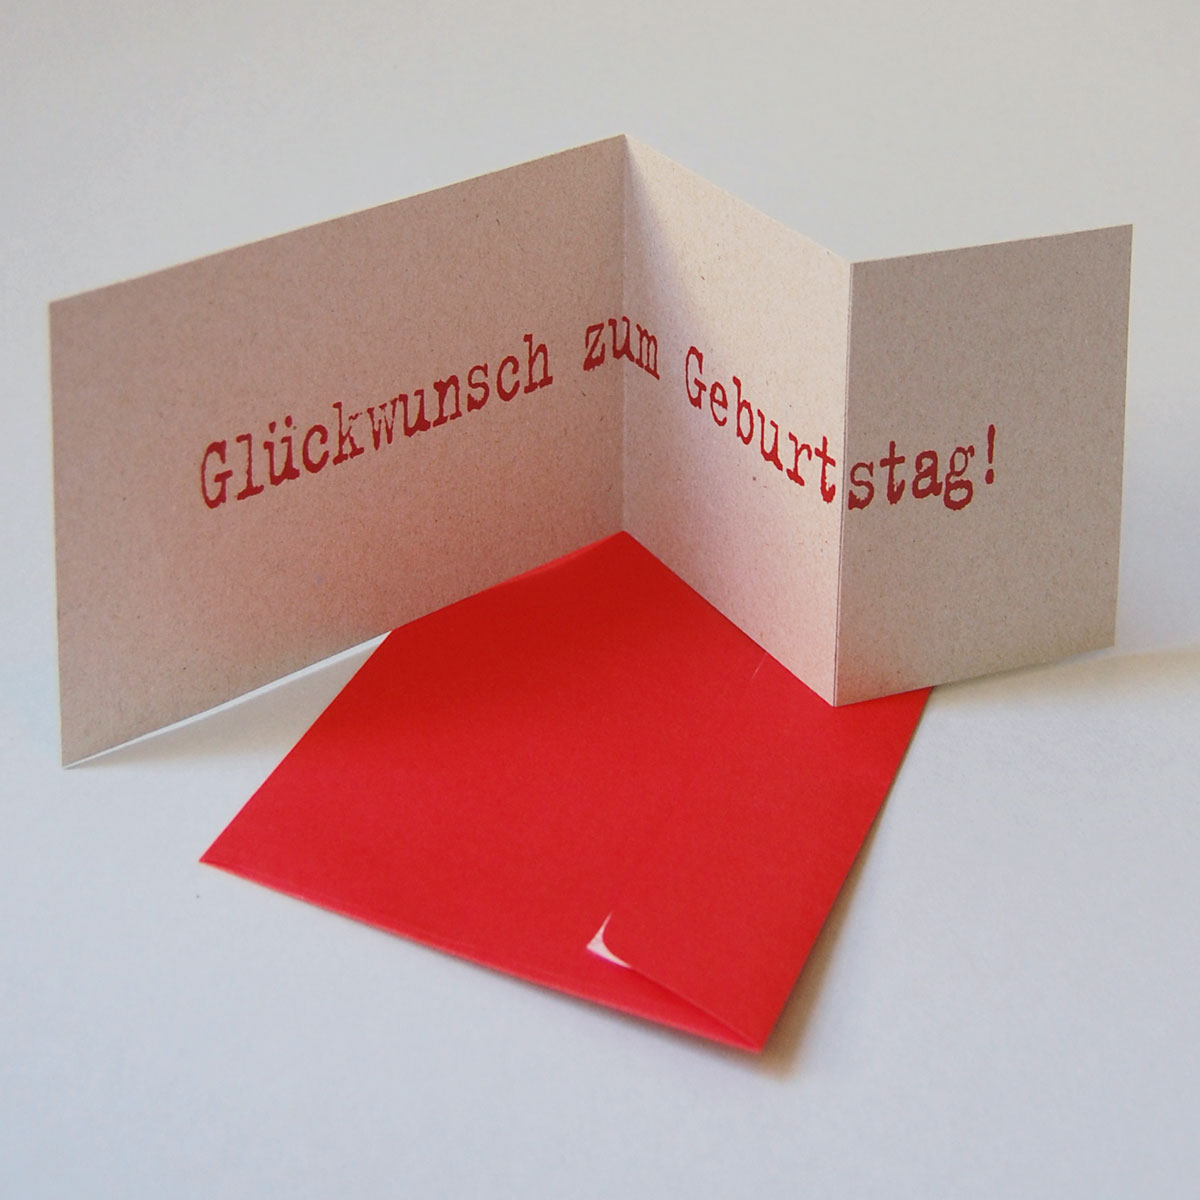 graue Recycling-Glückwunschkarten mit roten Kuverts: Glückstag!